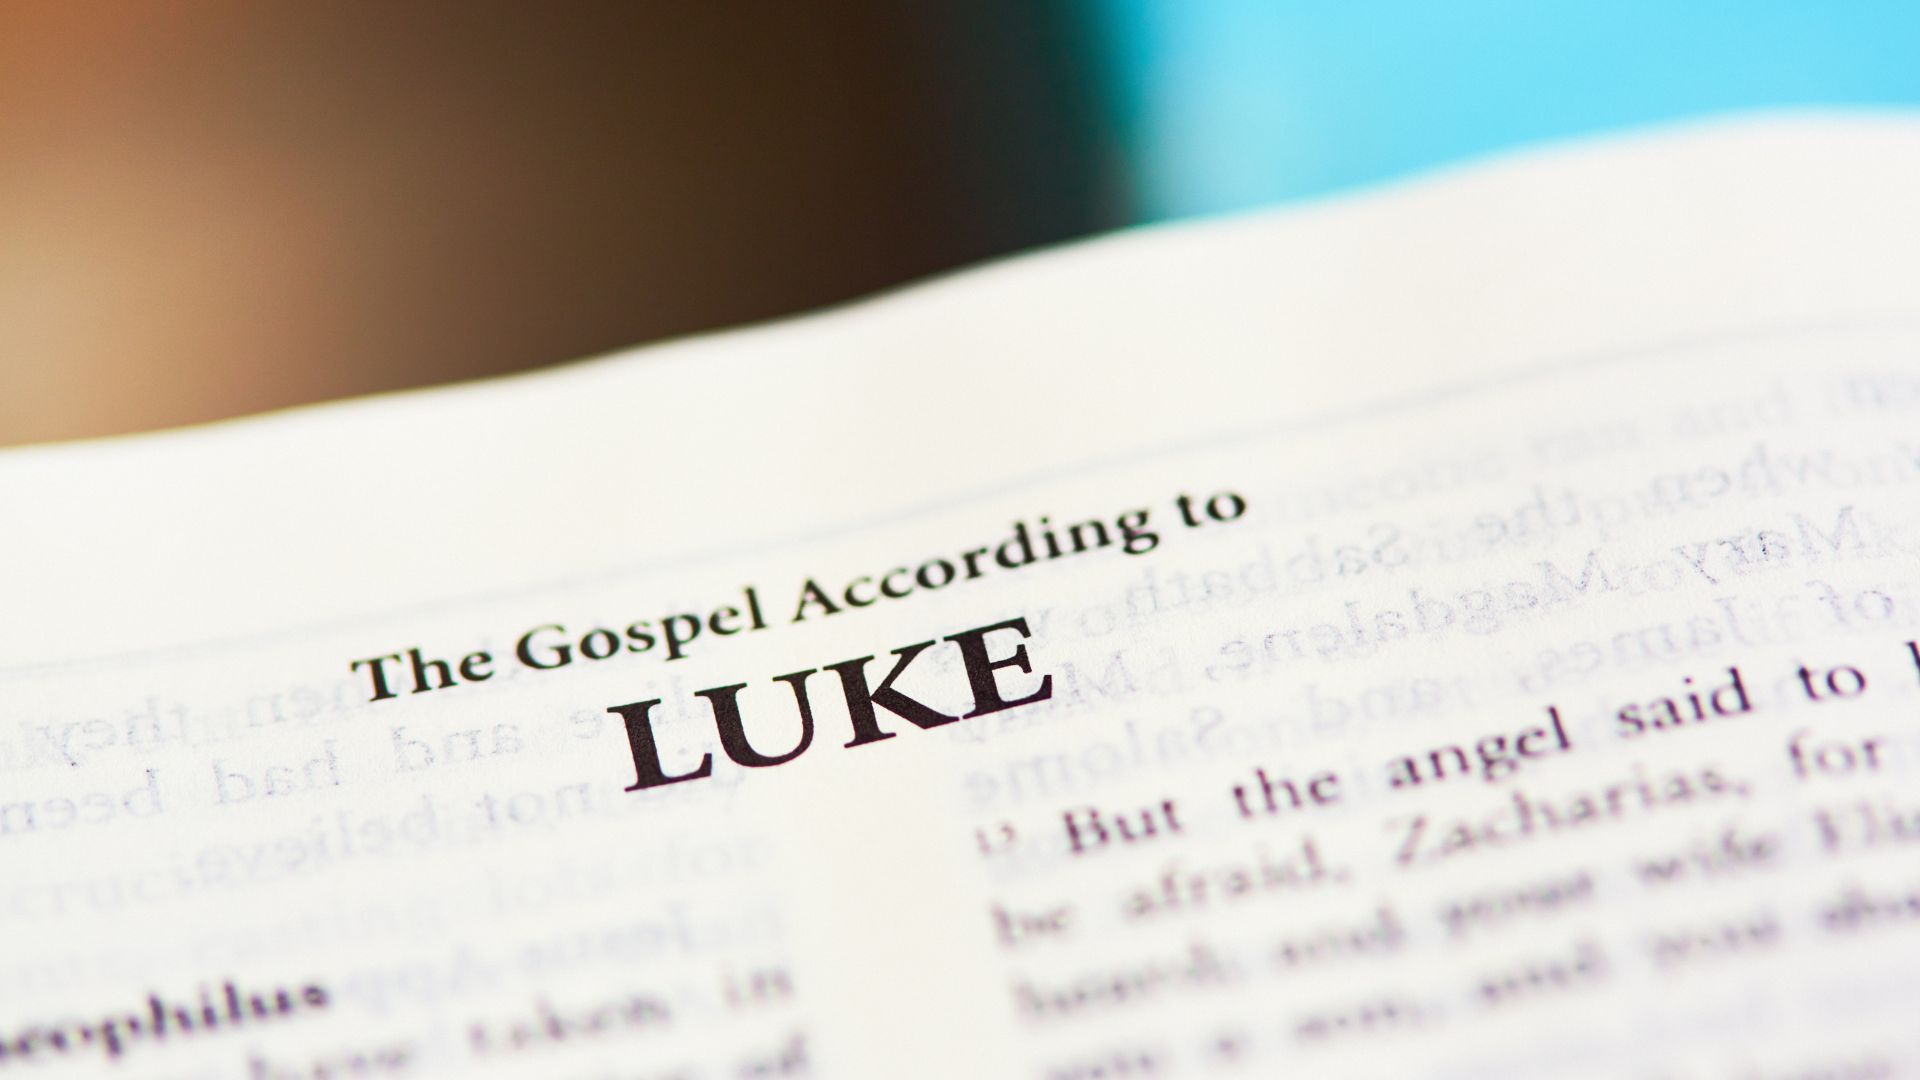 Bíblia aberta no evangelho de Lucas que está escrito em inglês